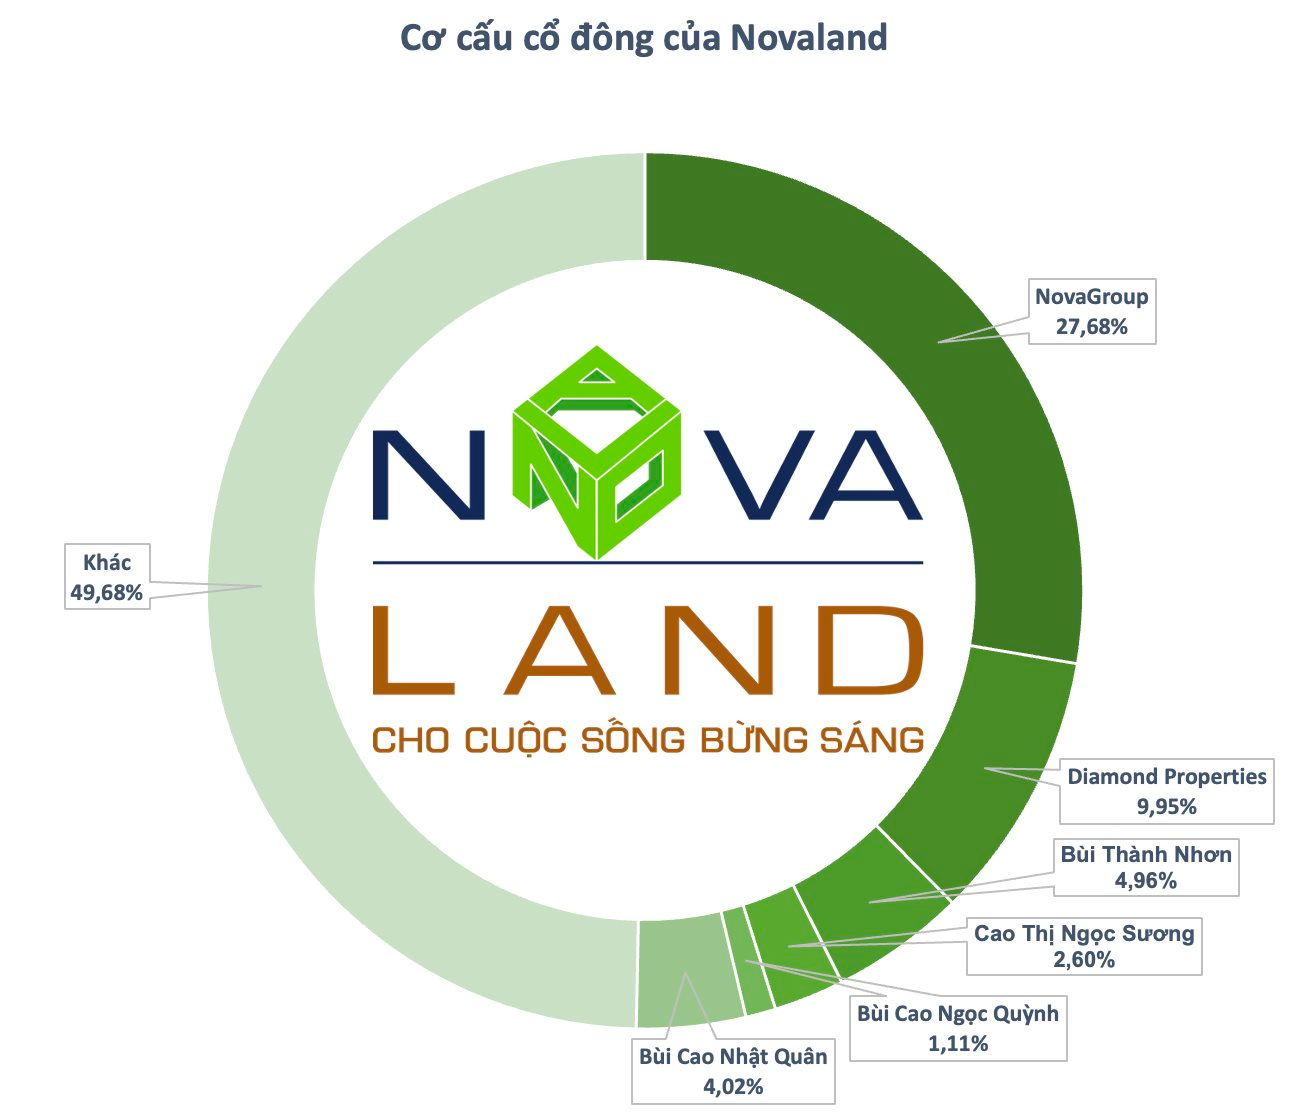 Tổ chức liên quan đến ông Bùi Thành Nhơn đăng ký bán tiếp 13,6 triệu cổ phiếu Novaland - Ảnh 1.